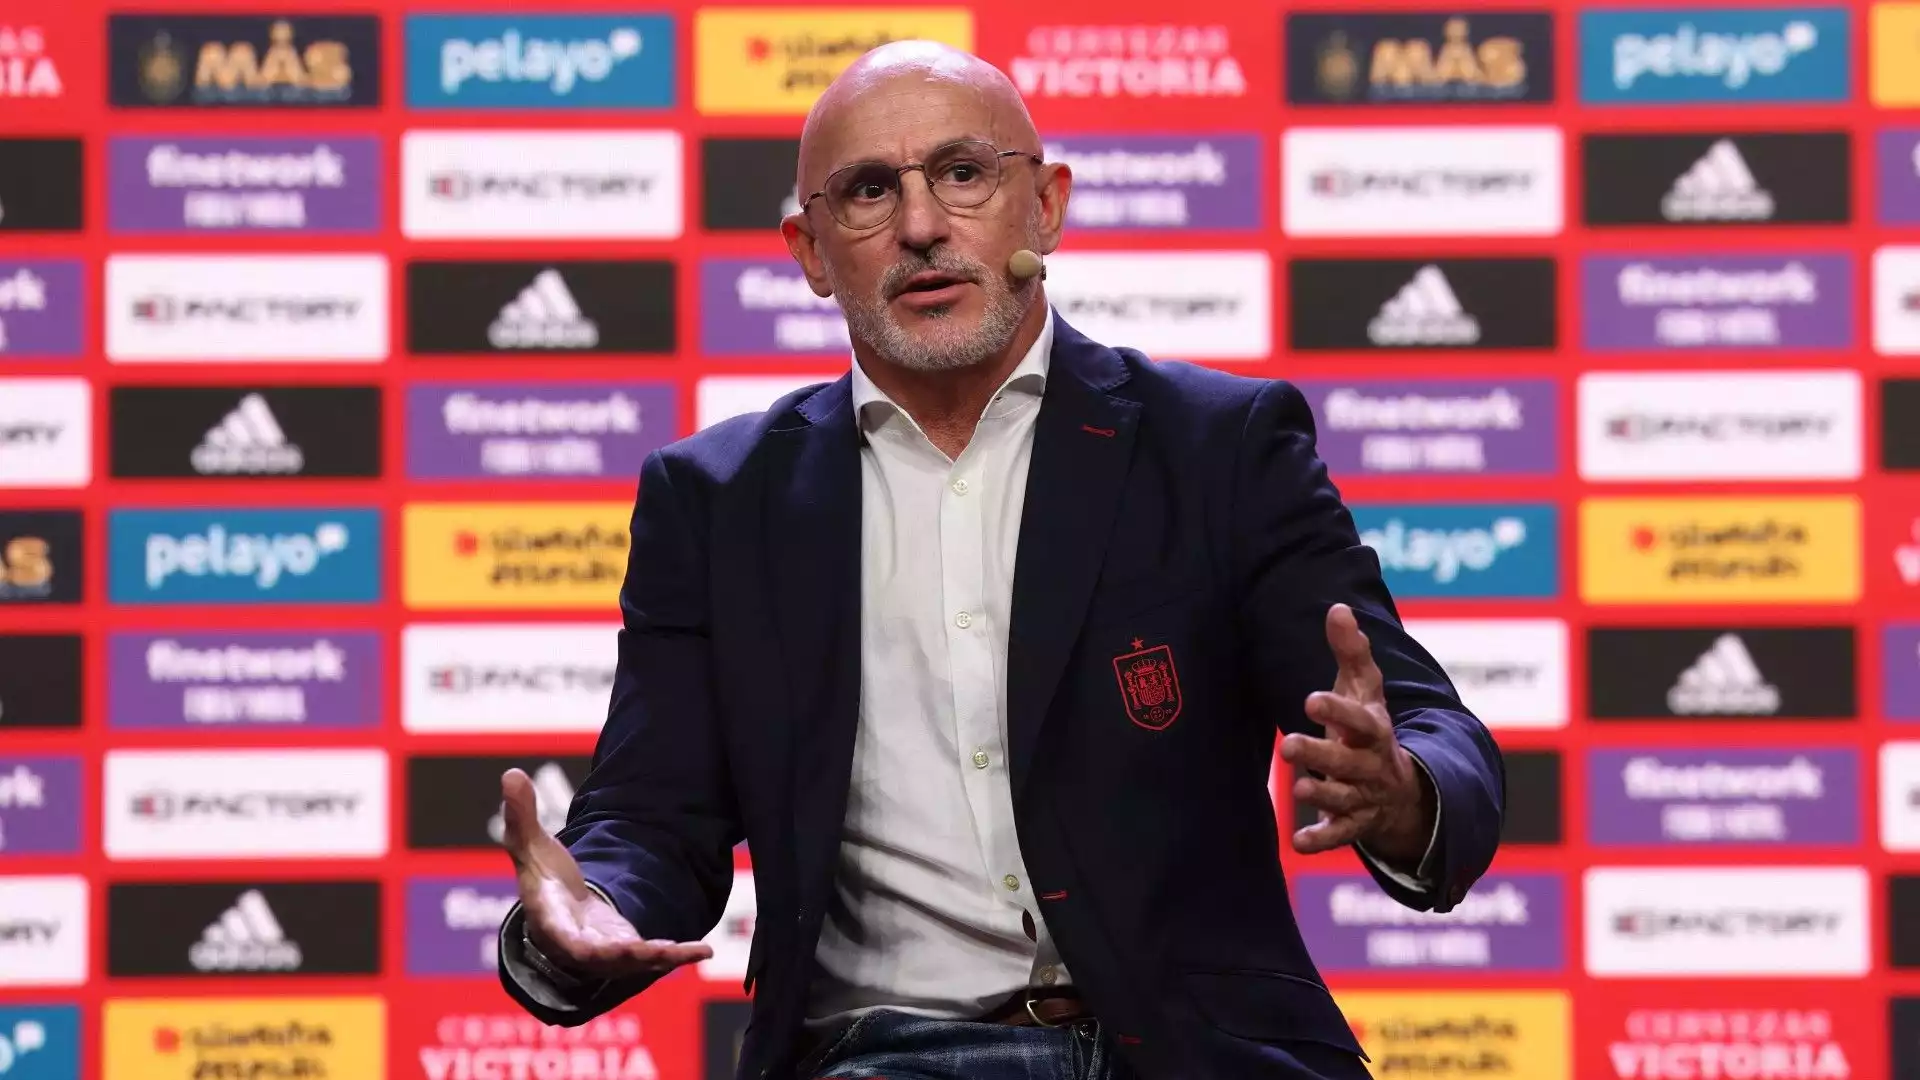 Il nuovo allenatore della Spagna ha dichiarato: "Conosco il presente e il futuro del calcio spagnolo"